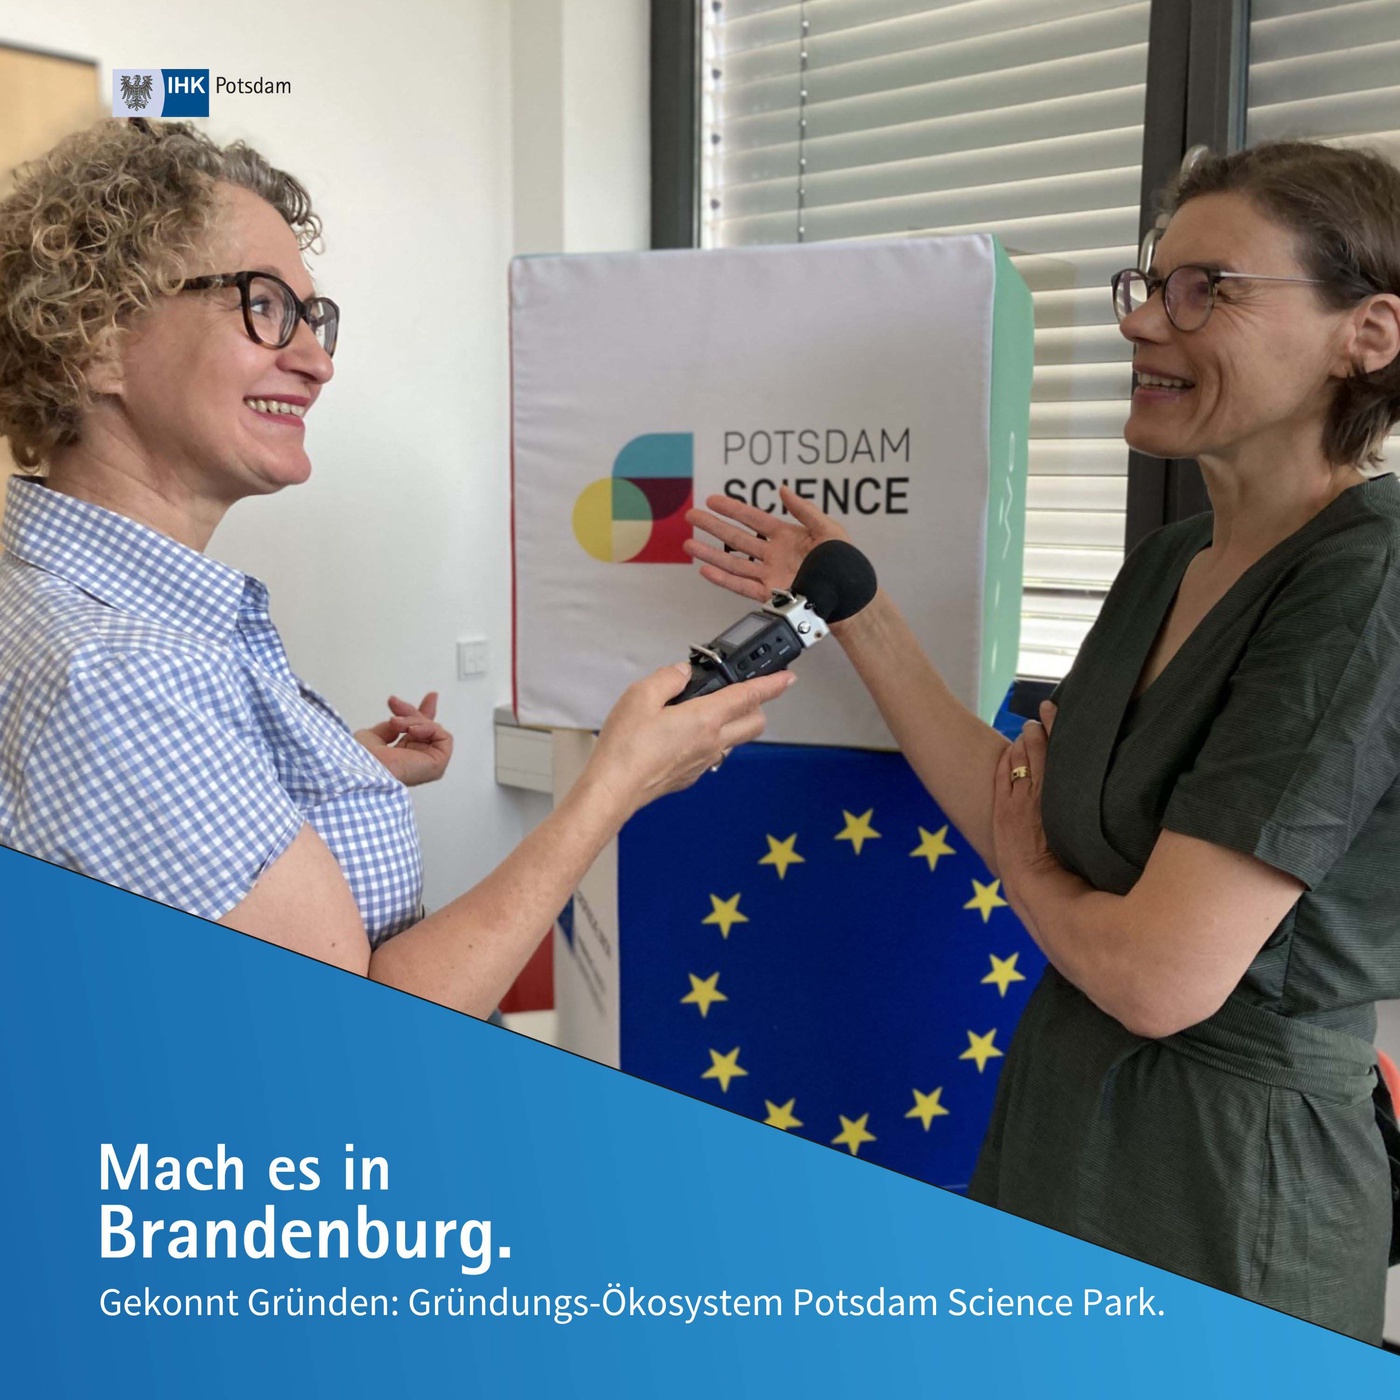 Gekonnt Gründen: Gründungs-Ökosystem Potsdam Science Park | Mach es in Brandenburg (15)